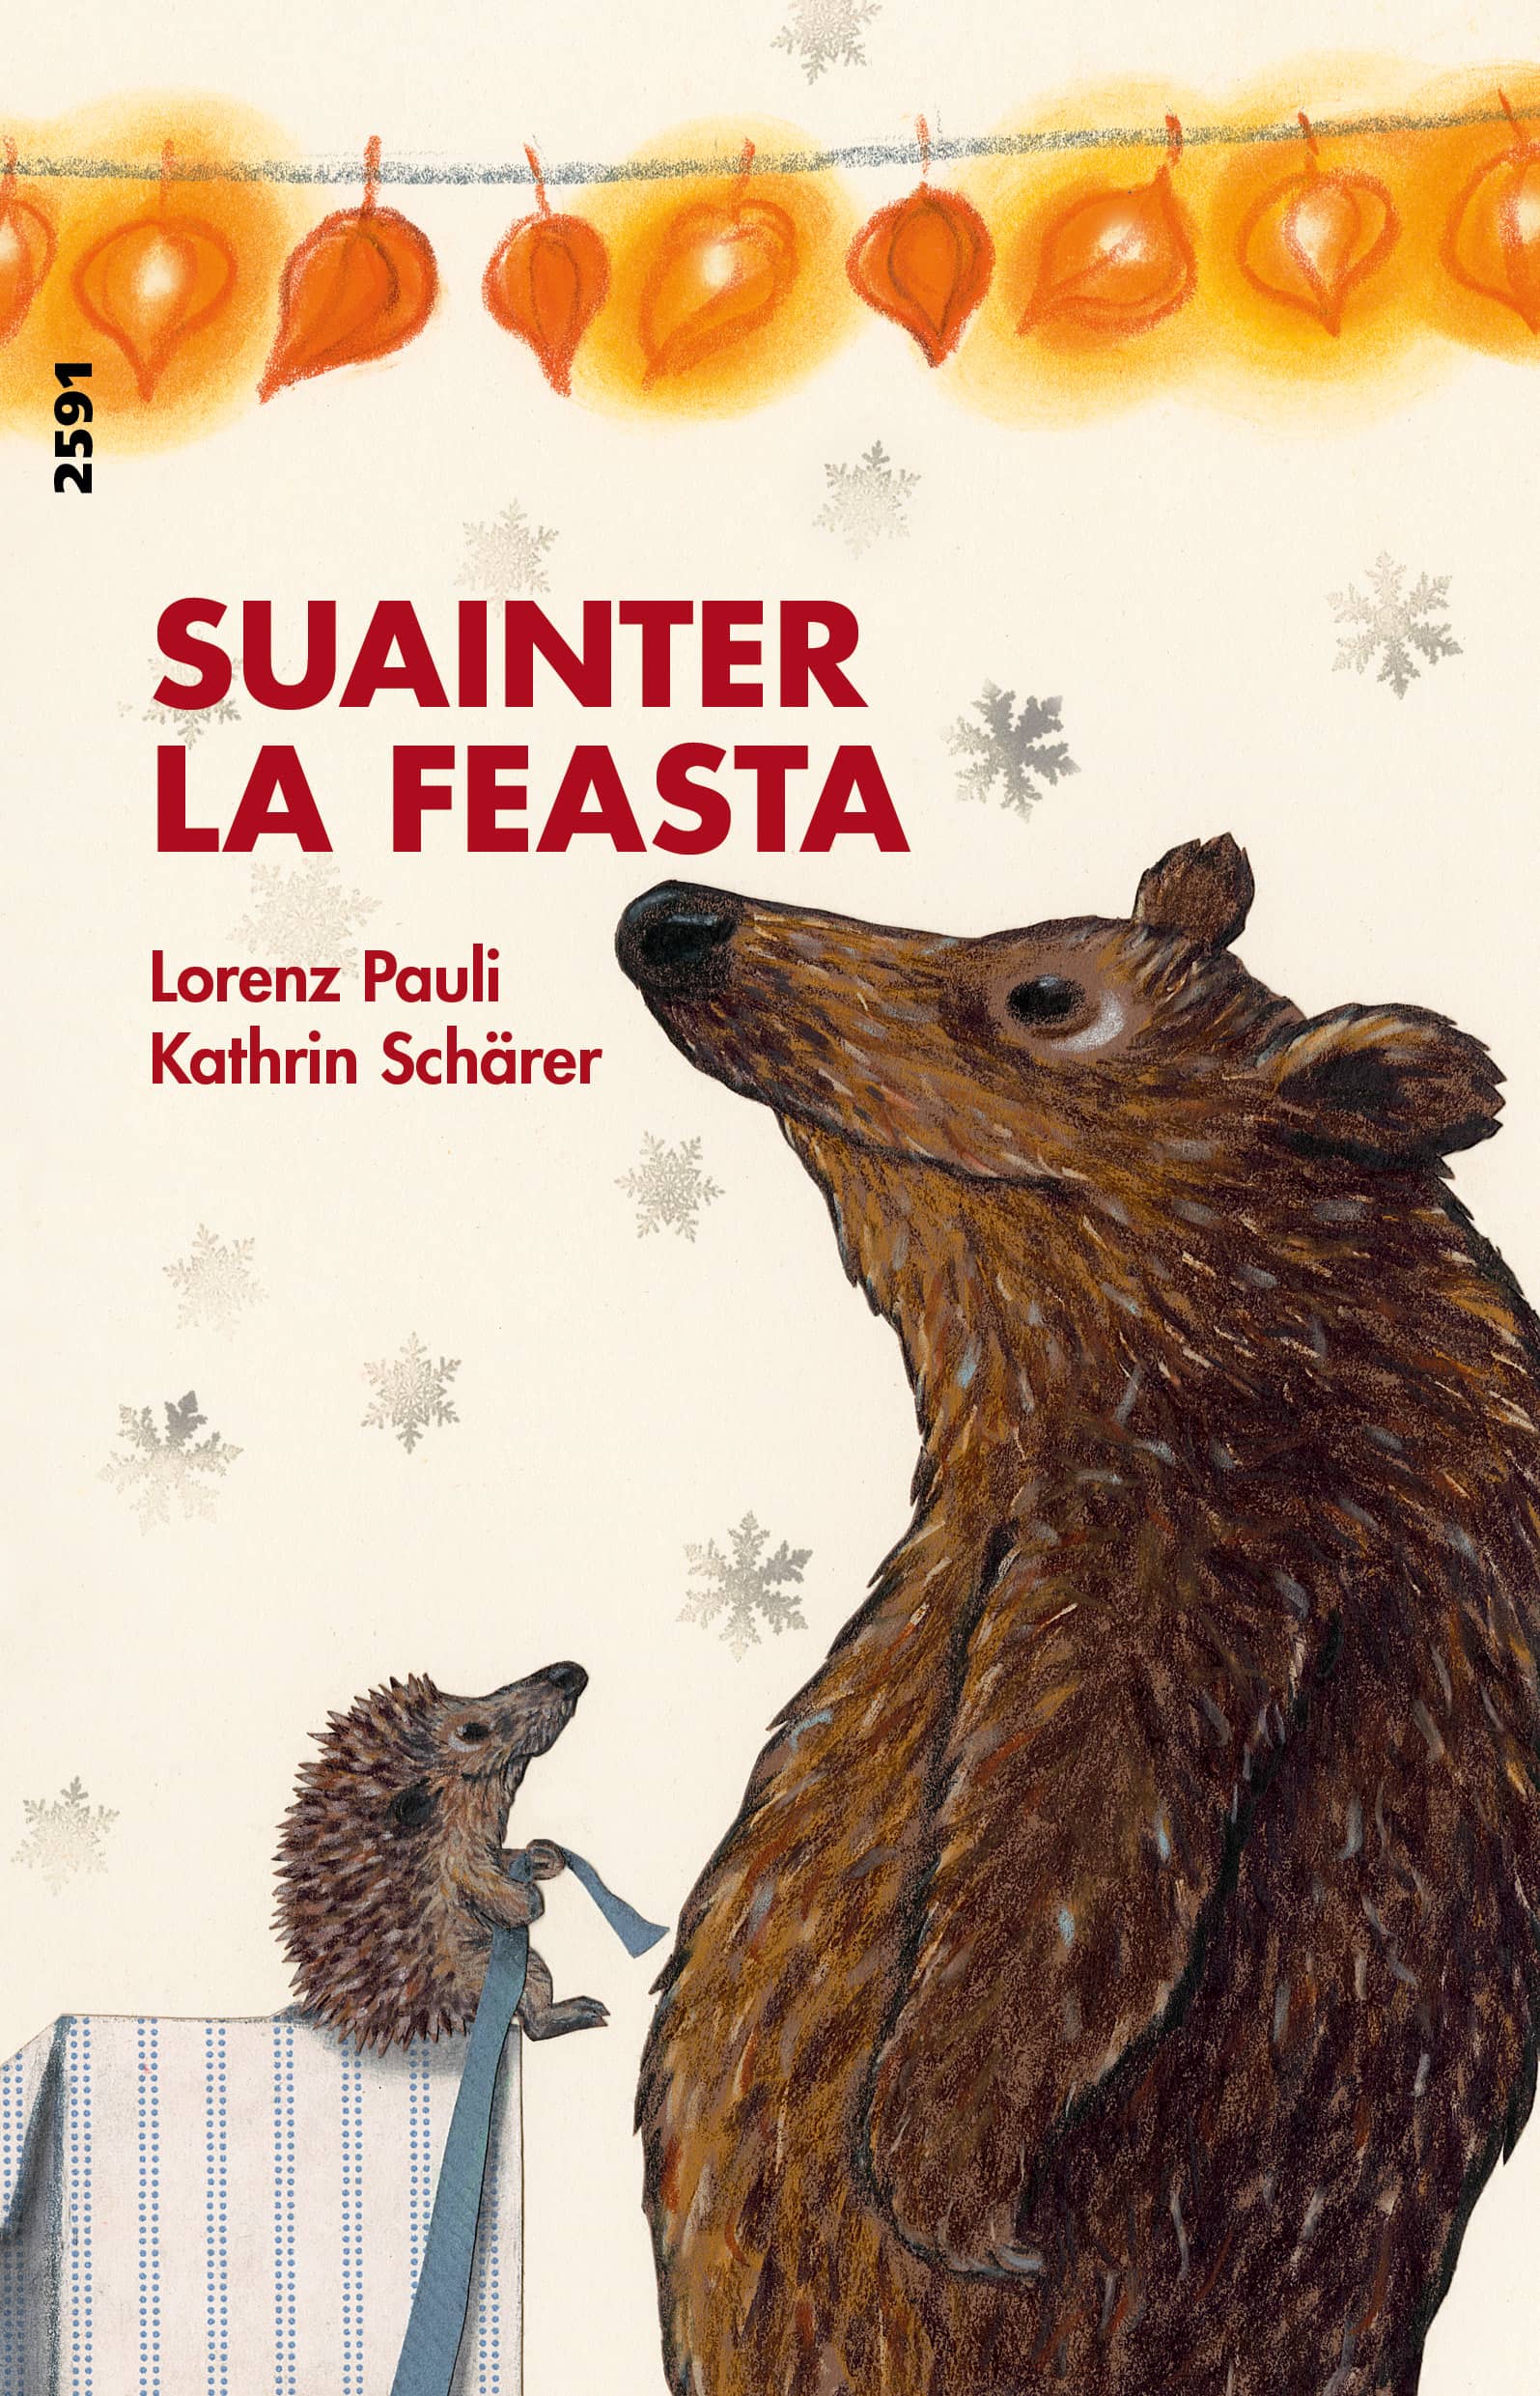 Suainter la feasta, ein Kinderbuch von Lorenz Pauli, Illustration von Kathrin Schaerer, SJW Verlag, Monate, Jahreszeiten